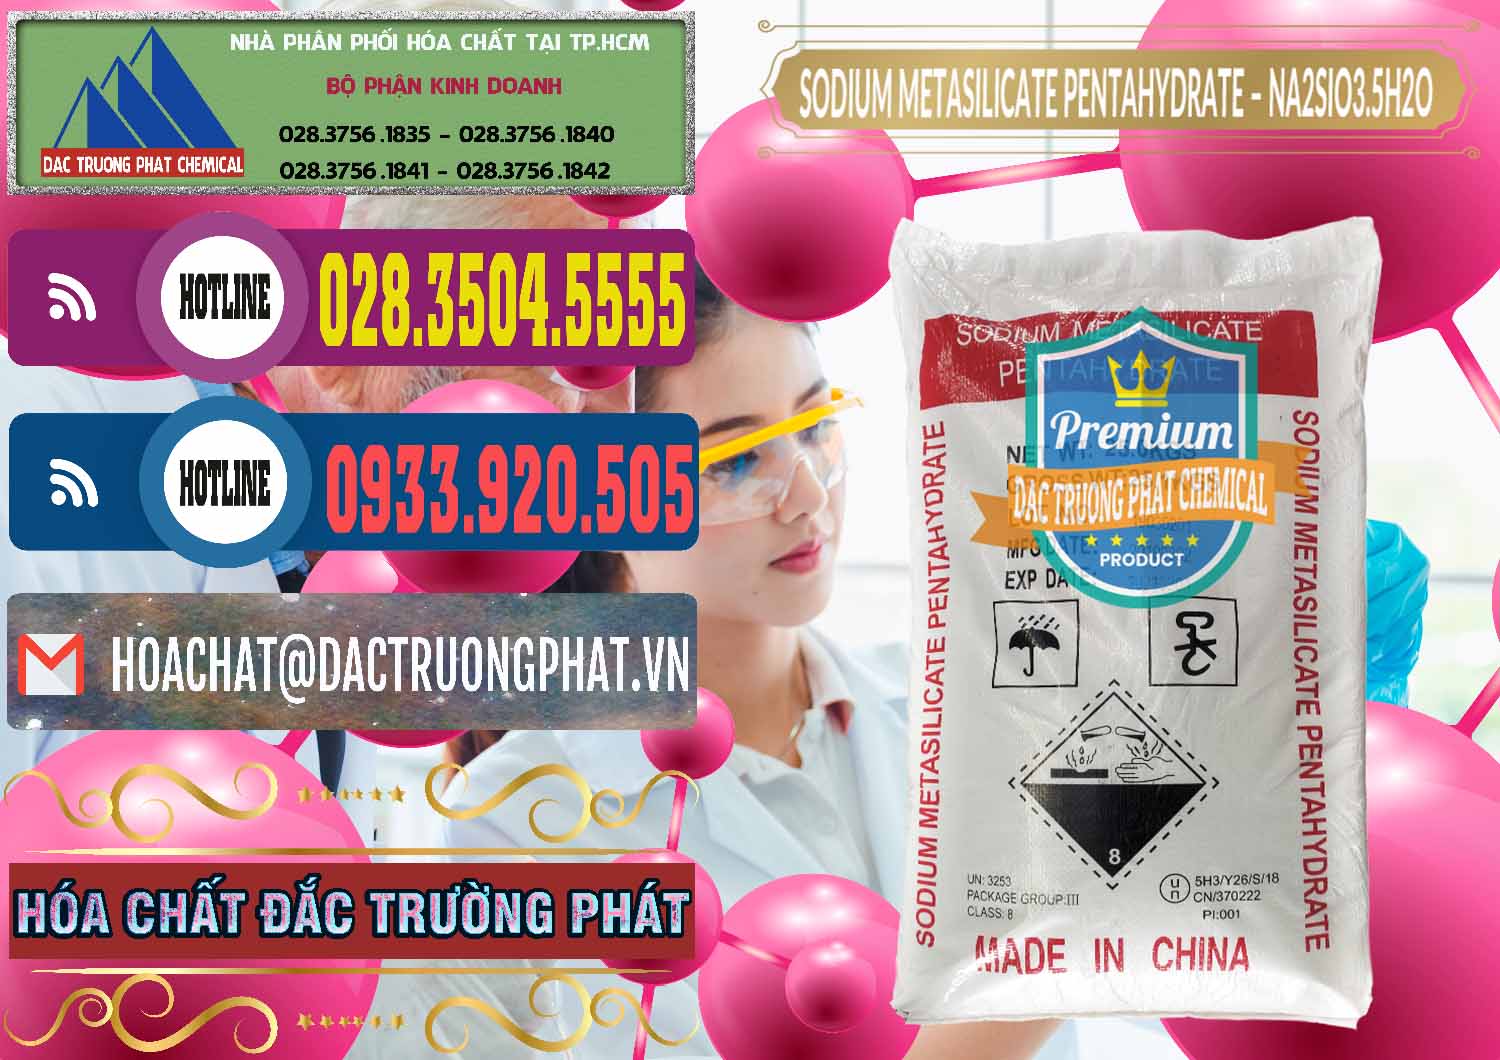 Đơn vị chuyên bán & cung cấp Sodium Metasilicate Pentahydrate – Silicate Bột Trung Quốc China - 0147 - Chuyên cung cấp & kinh doanh hóa chất tại TP.HCM - muabanhoachat.com.vn